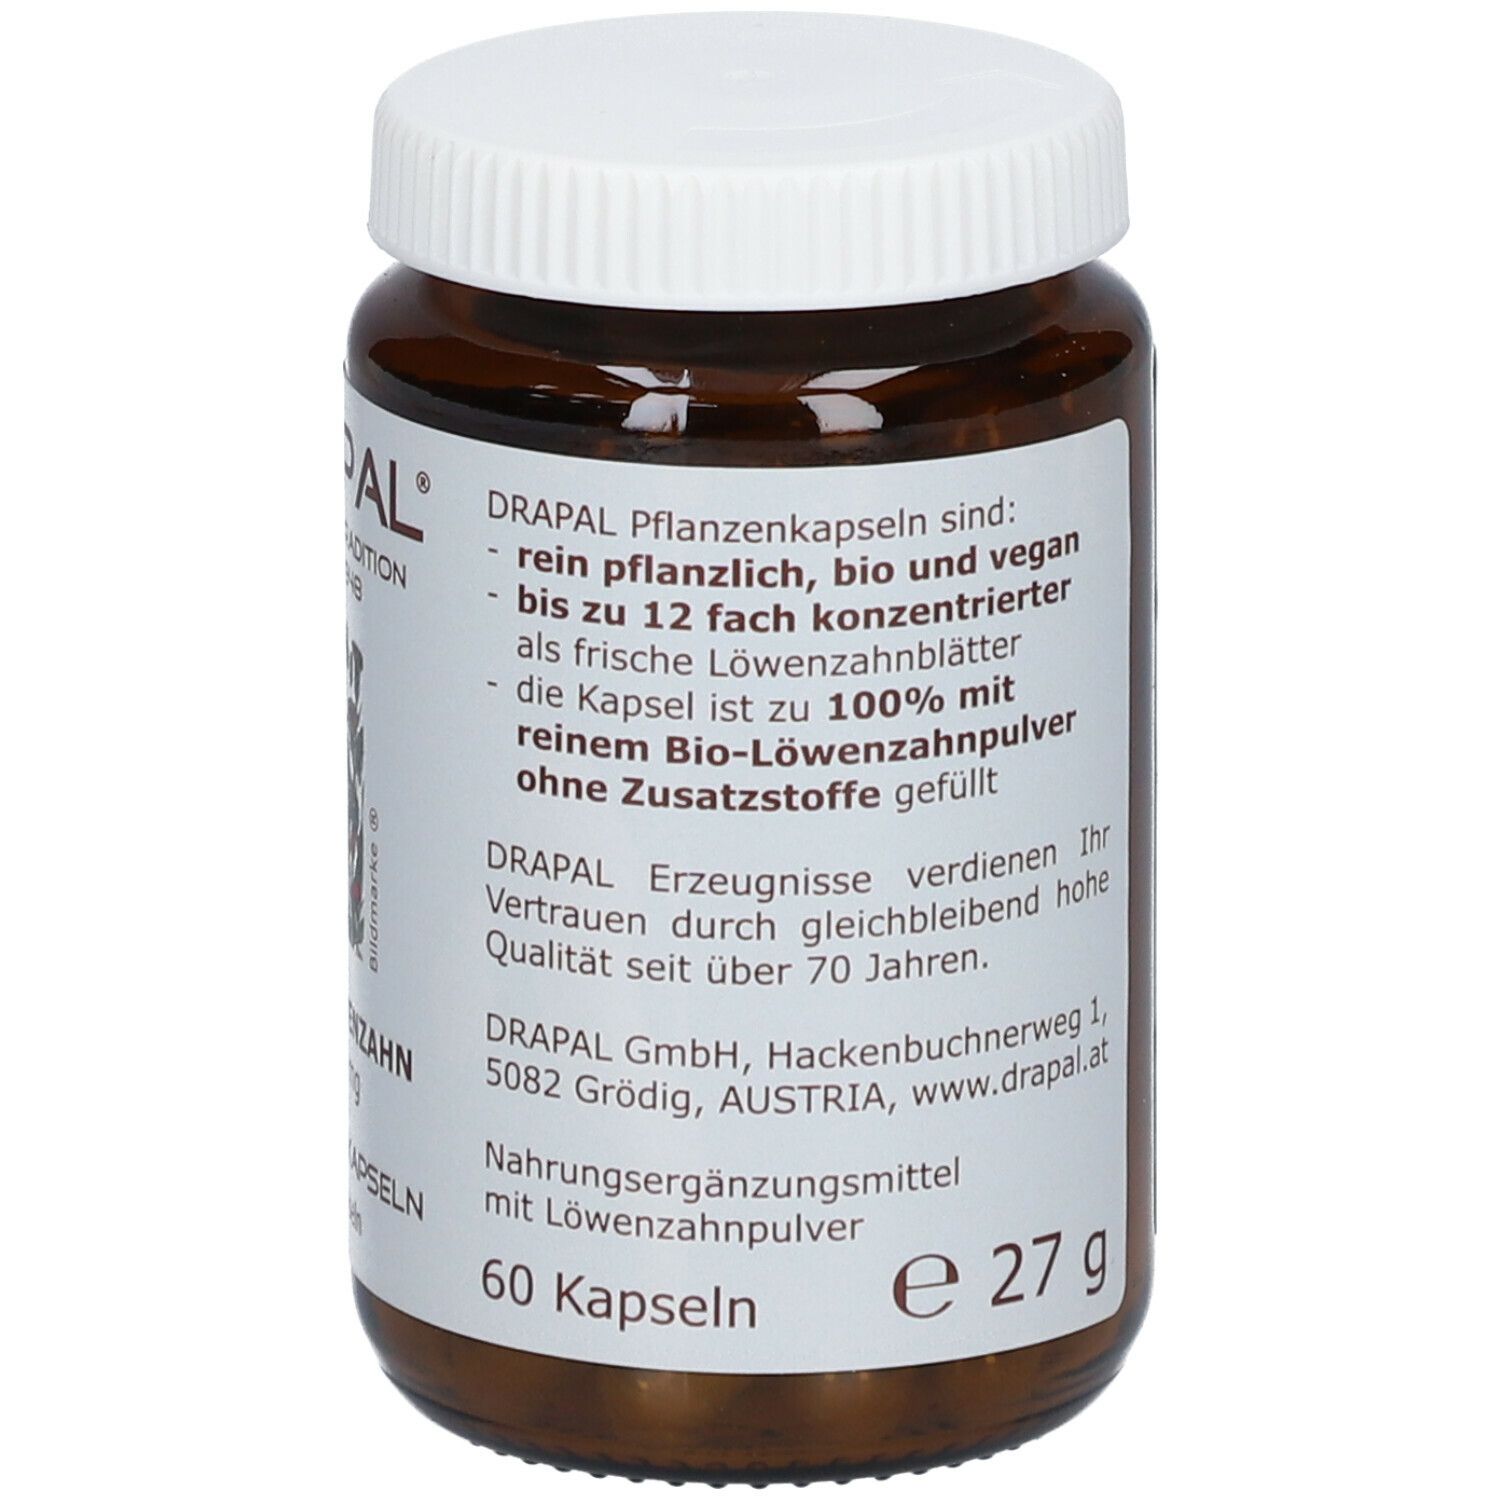 DRAPAL® Bio-Löwenzahn 400 mg